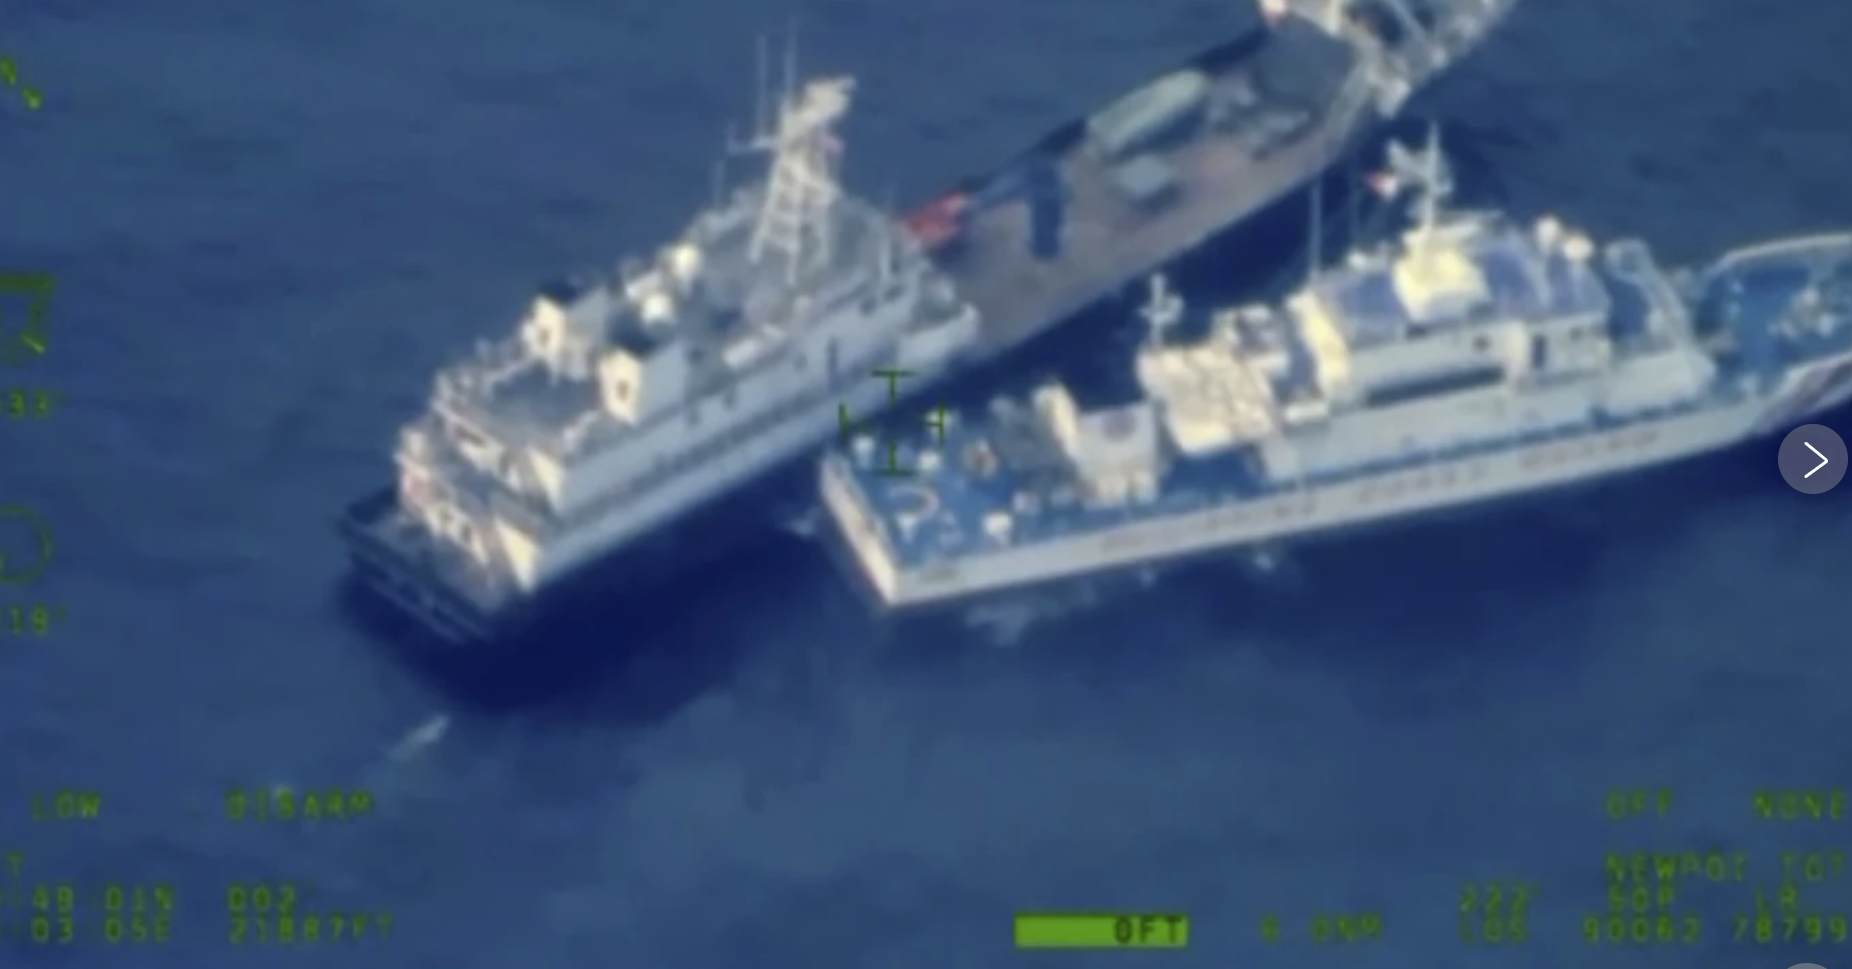 Mỹ khẳng định bảo vệ Philippines sau các sự cố với tàu Trung Quốc trên Biển Đông - Ảnh 1.